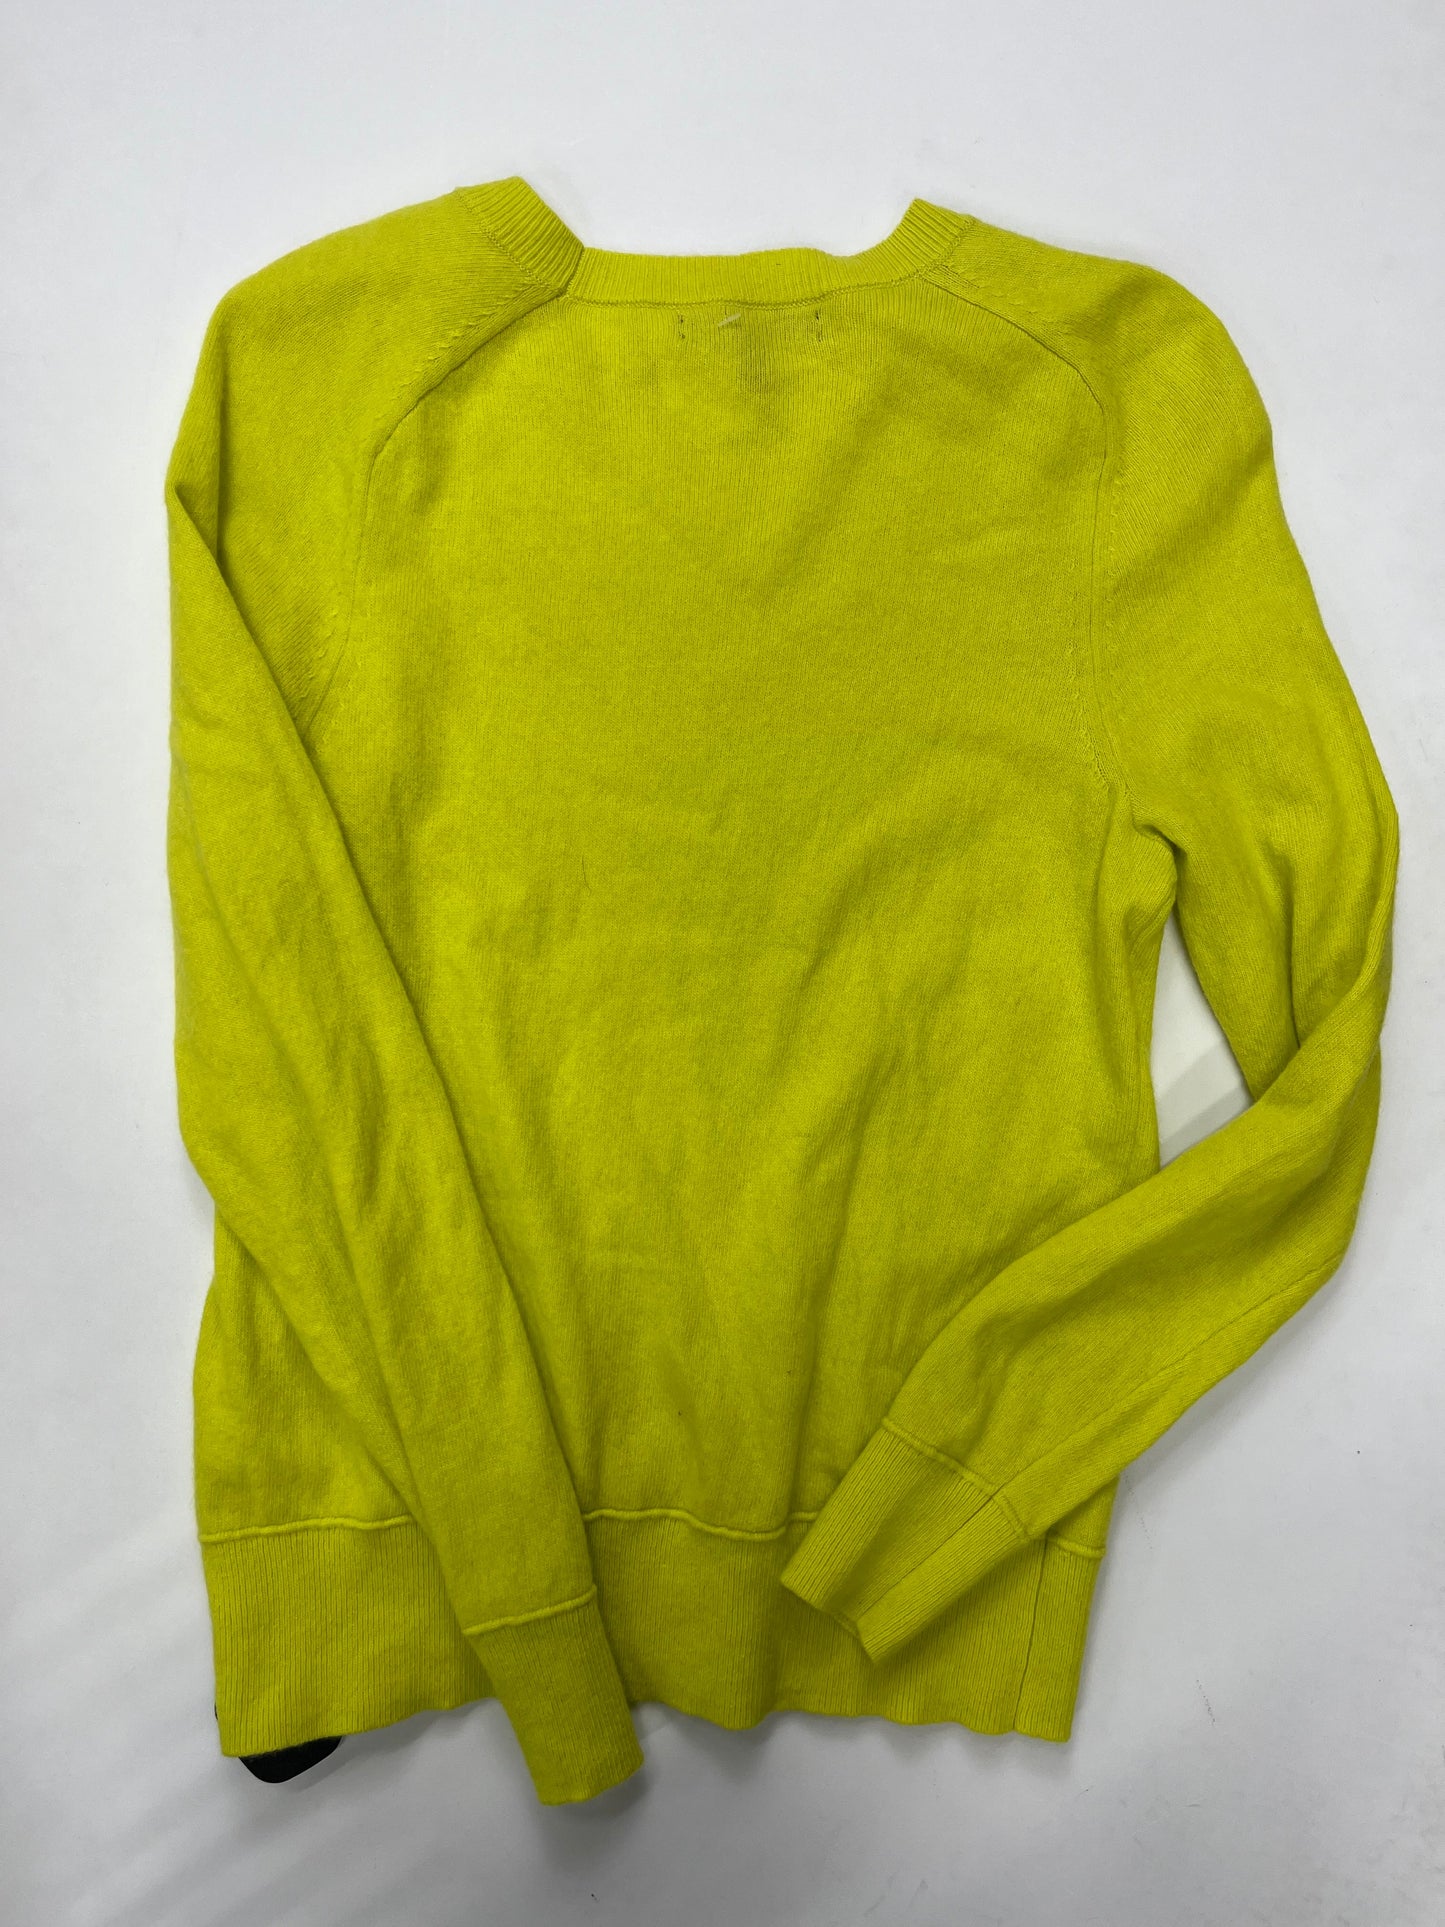 Yellow Sweater Banana Republic, Size Xs